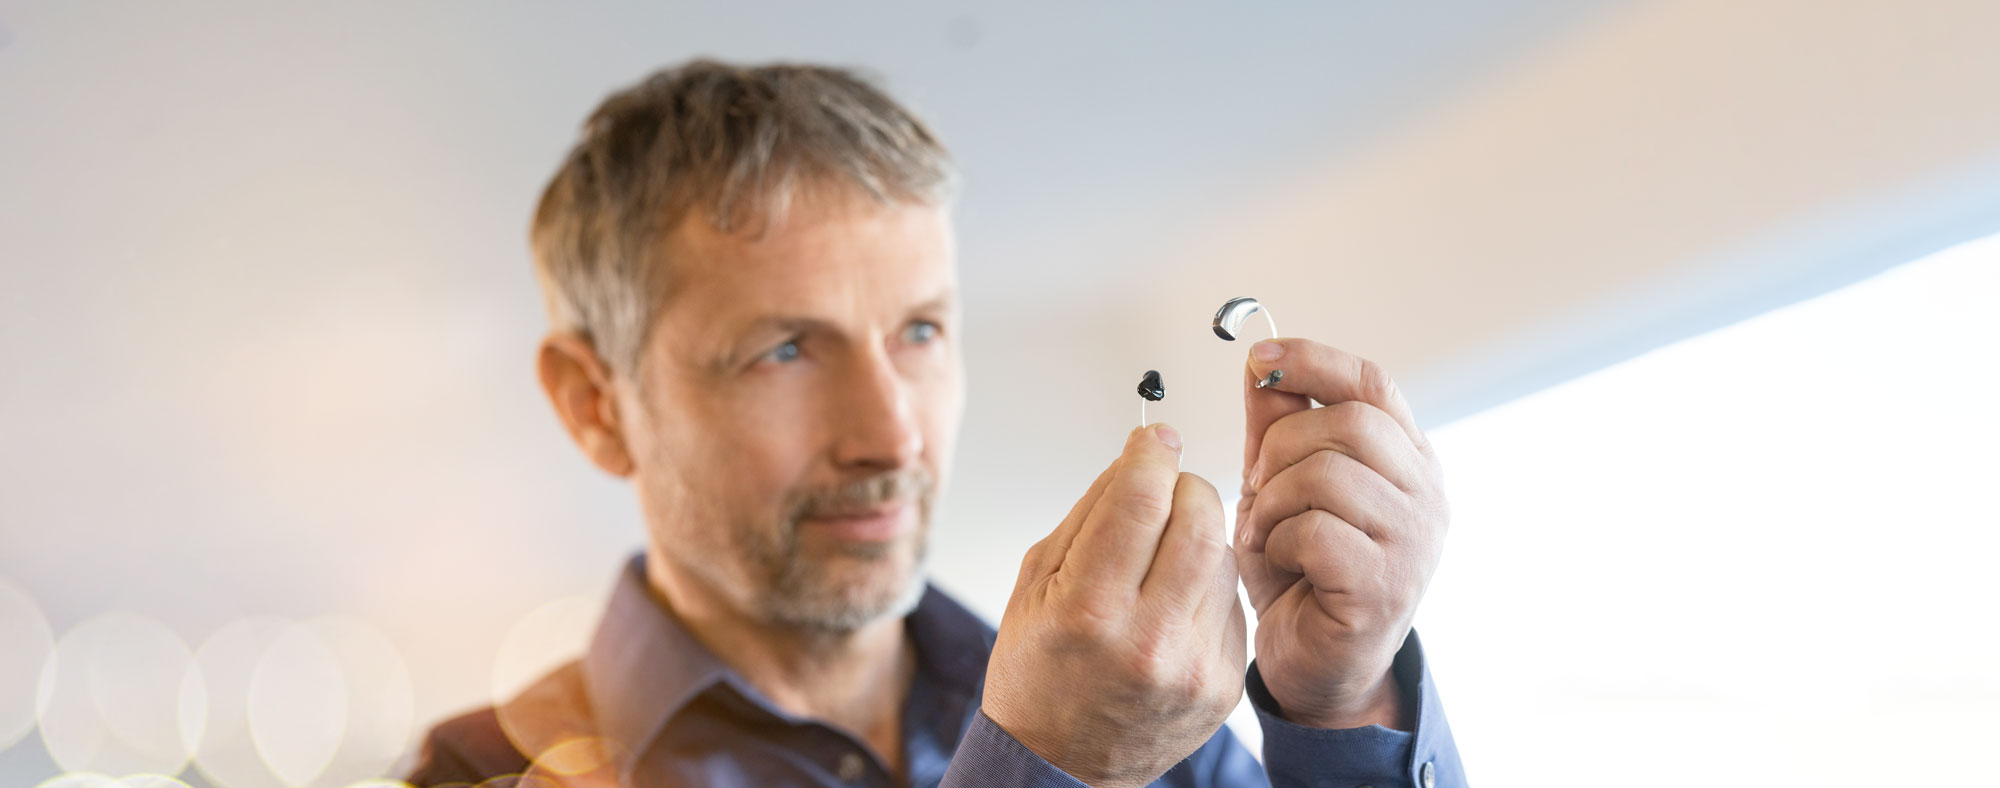 Vergleich von Im Ohr Hörgerät und Hinter dem Ohr Hörgerät. Mann hält die Hörgeräte in der Hand